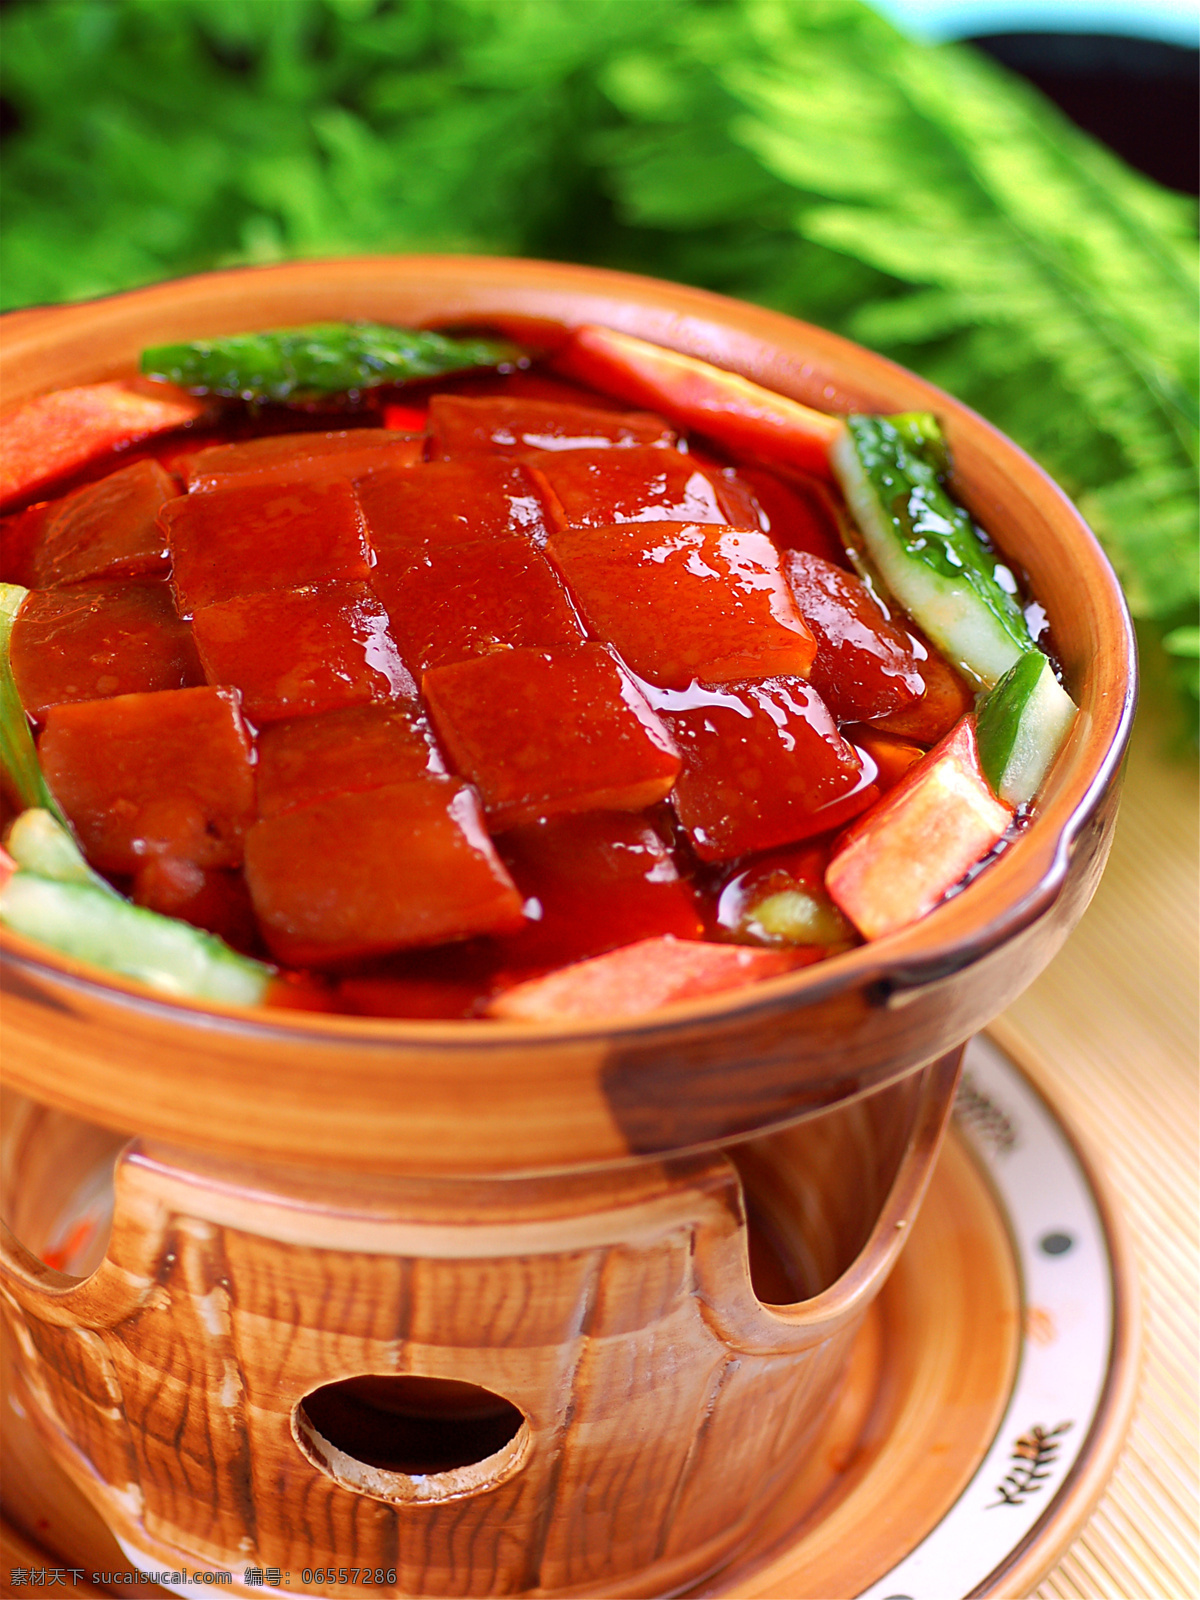 炒台湾香卤肉 美食 传统美食 餐饮美食 高清菜谱用图